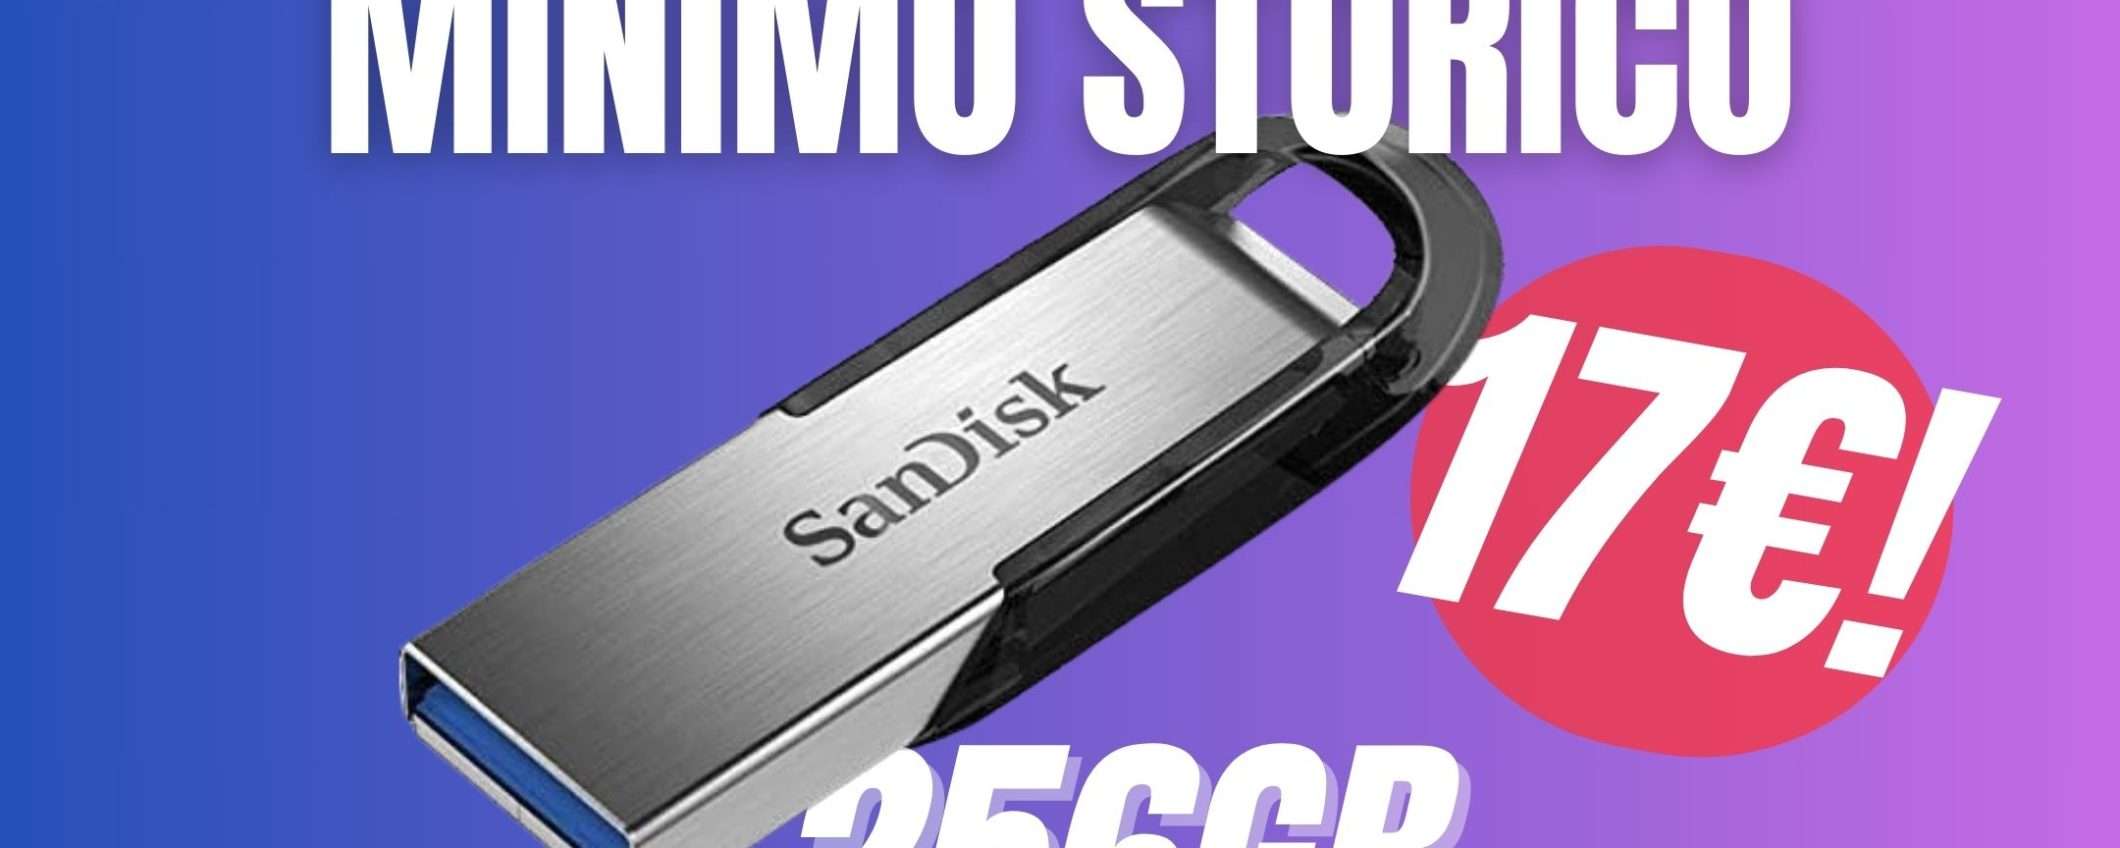 Fai tua questa Chiavetta USB SanDisk da 256GB per pochi spicci! (-50%)